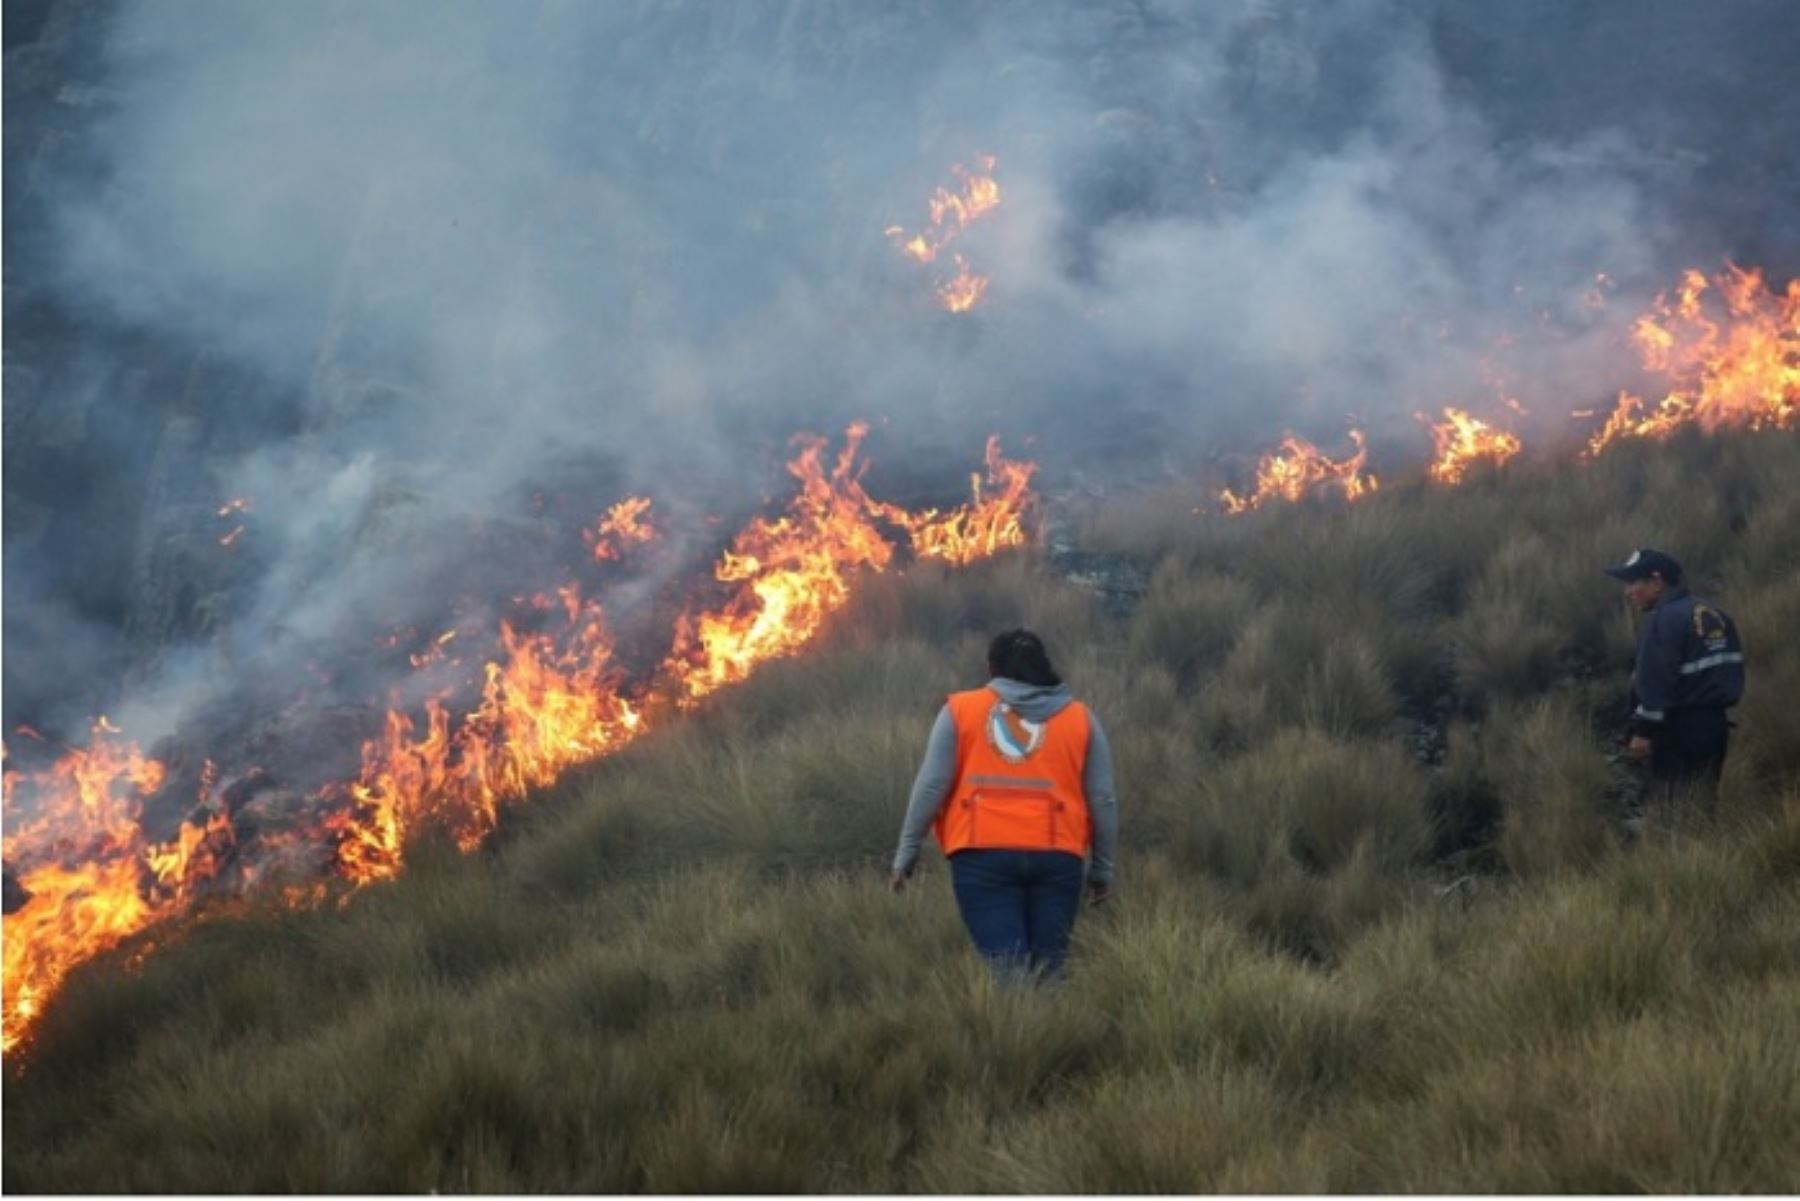 Un total de 25 incendios forestales se han registrado hasta el momento en diversas provincias de la región Áncash, informó el Centro de Operaciones de Emergencia Regional (COER).